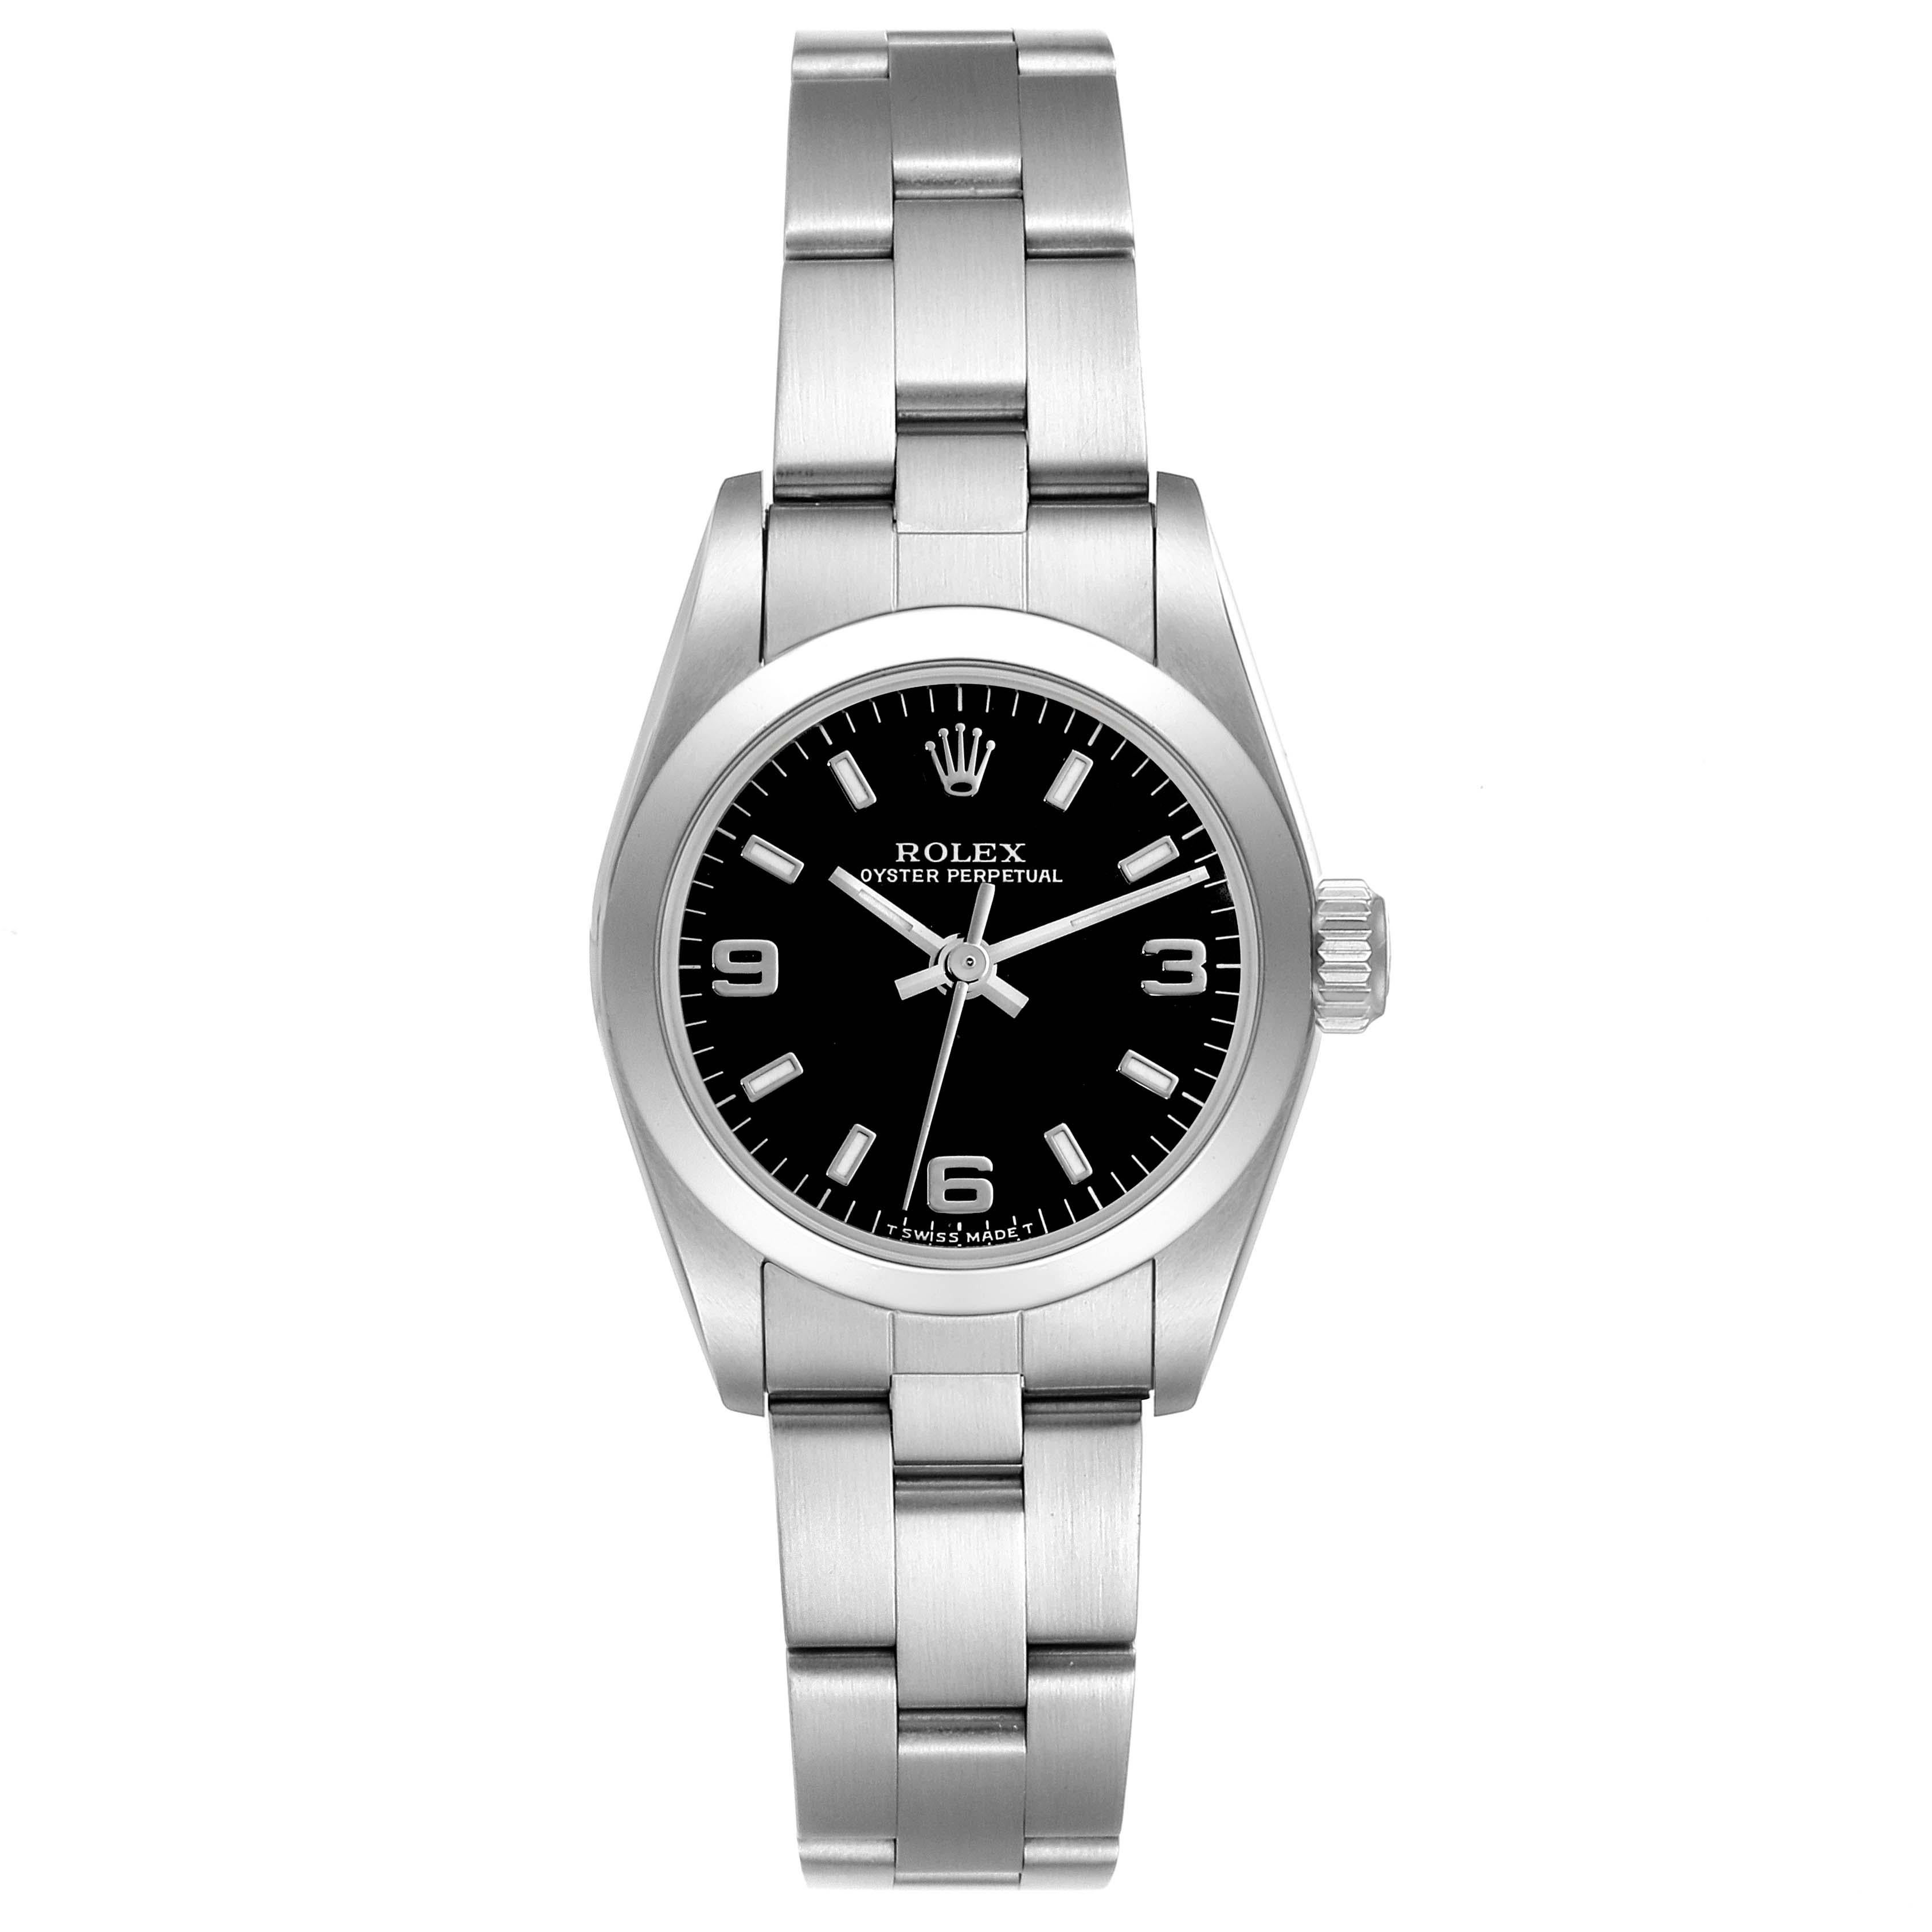 Rolex Oyster Perpetual Steel Black Dial Ladies Watch 67180. Mouvement automatique à remontage automatique, officiellement certifié chronomètre. Boîtier oyster en acier inoxydable de 24.0 mm de diamètre. Logo Rolex sur une couronne. Lunette bombée